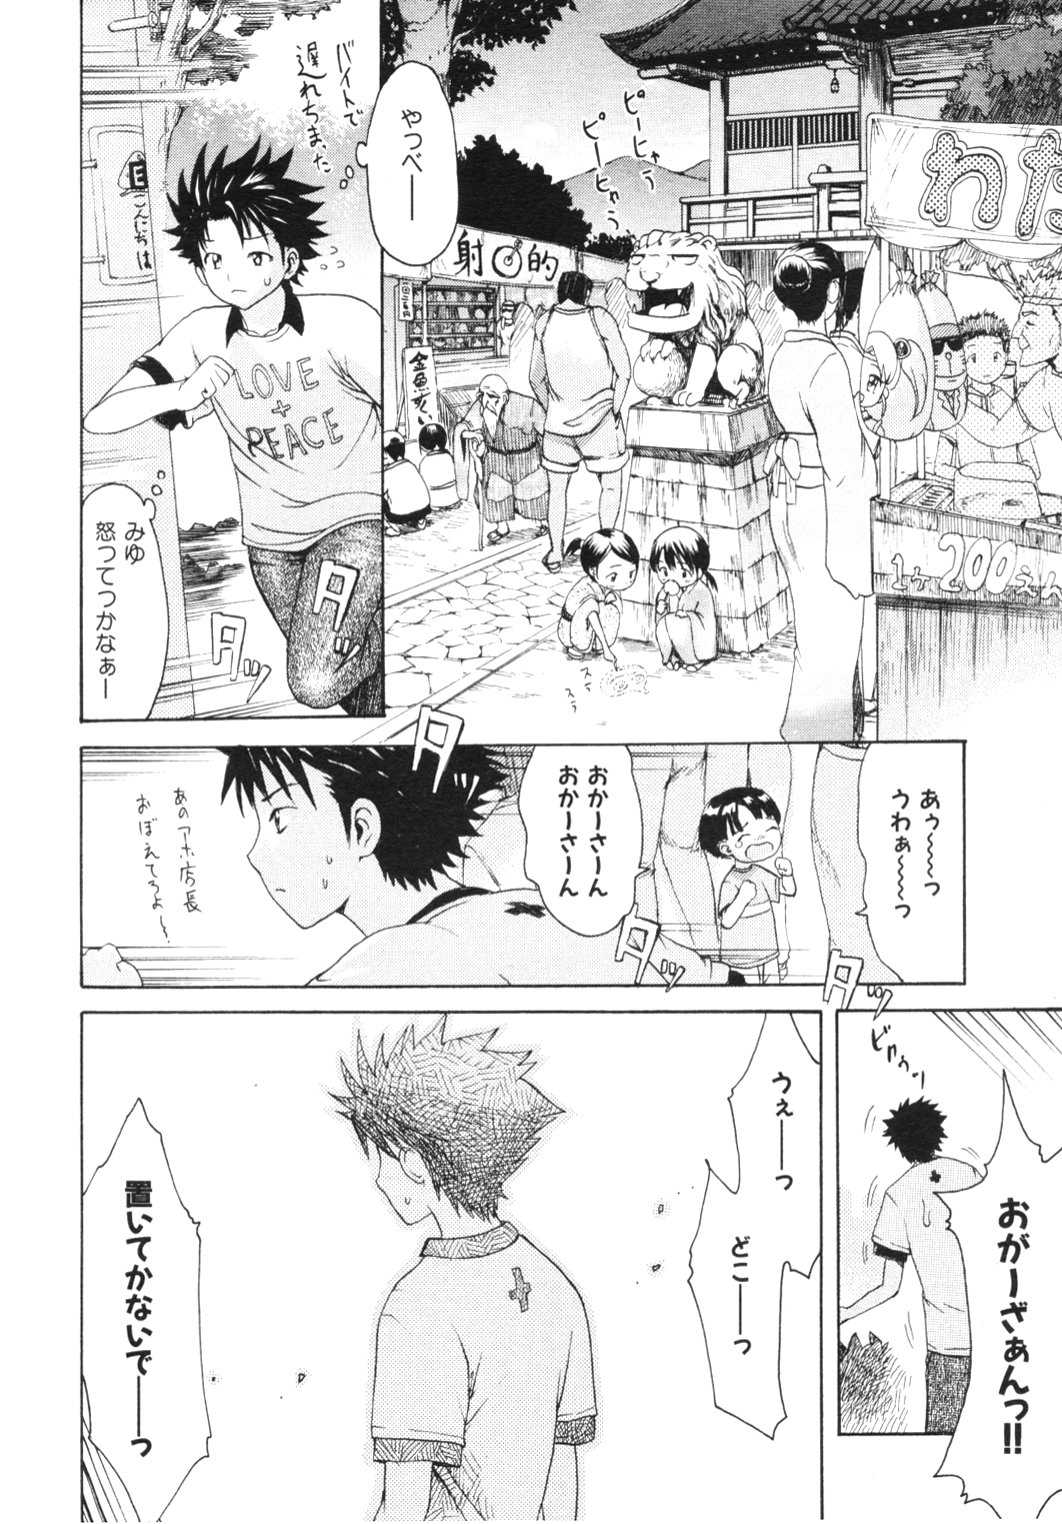 [2006.11.15]Comic Kairakuten Beast Volume 13 